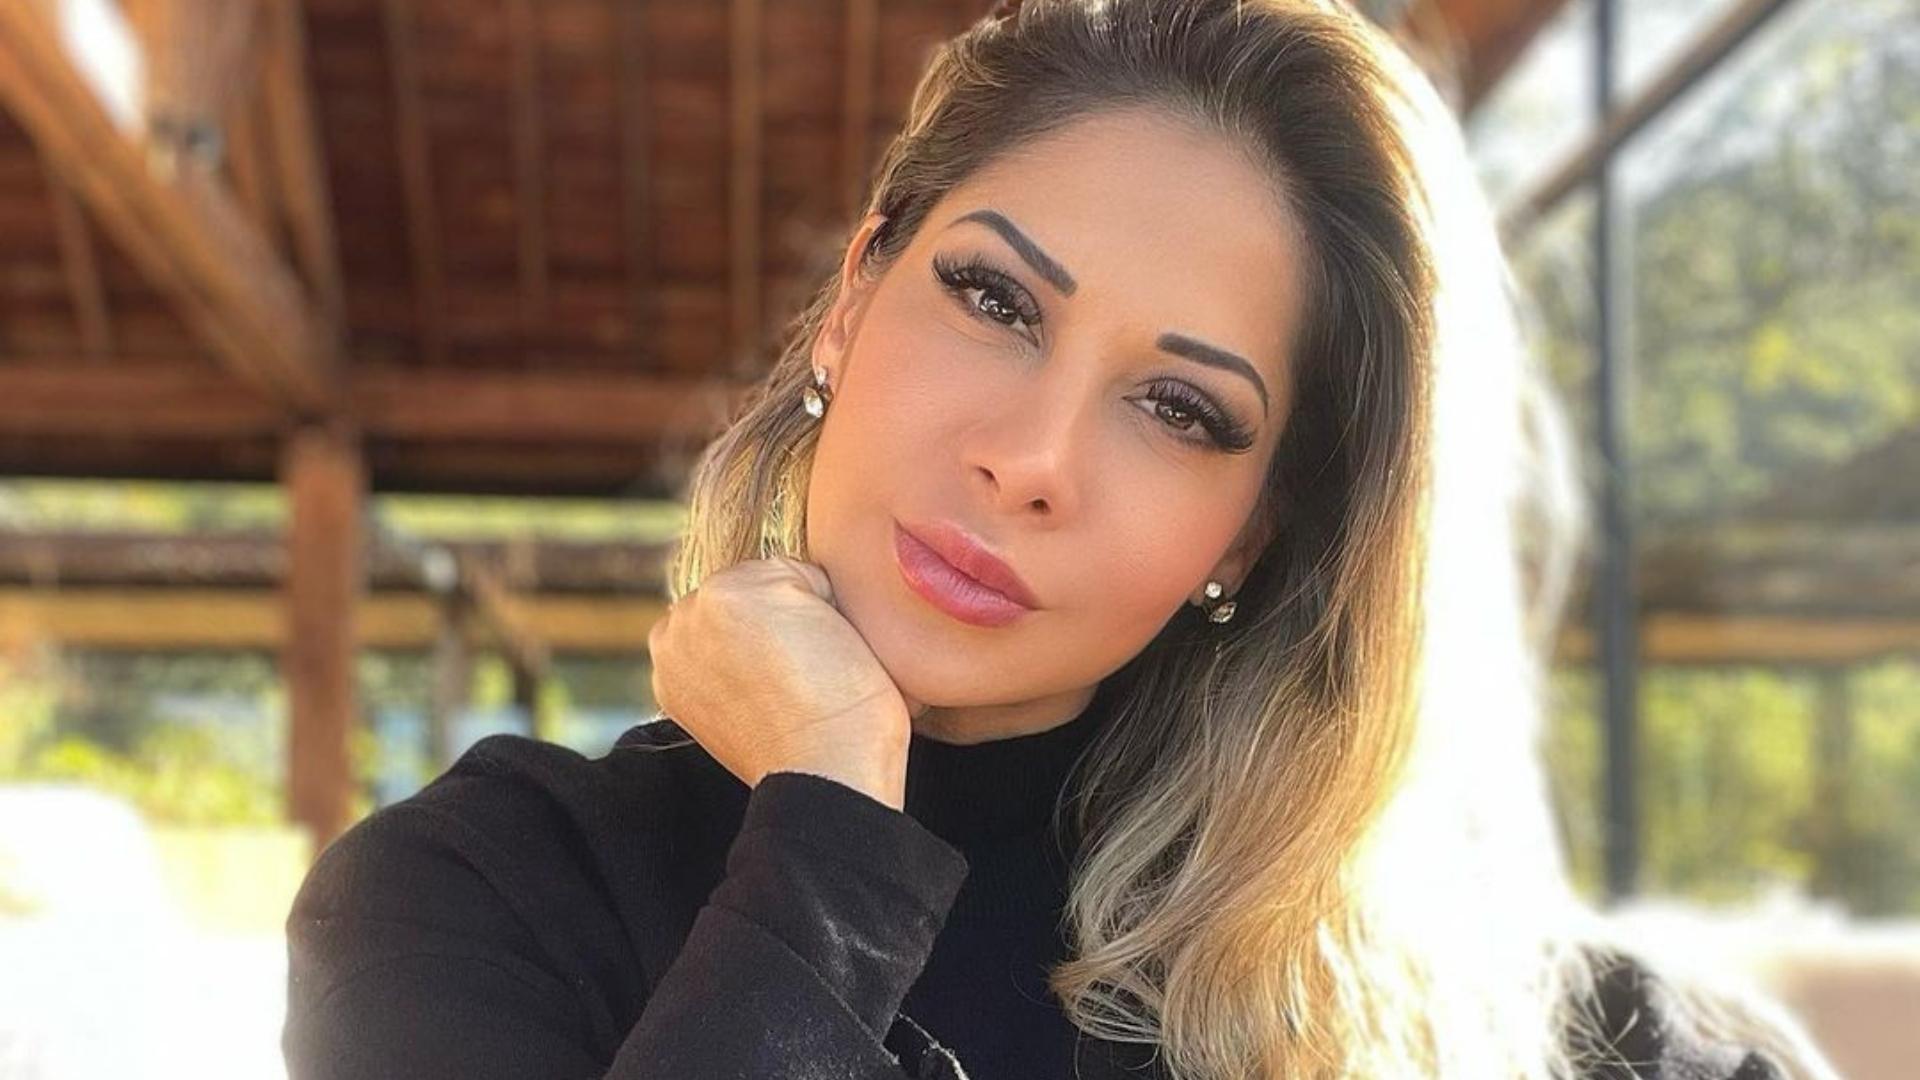 Solteira, Maíra Cardi sobe no balanço com biquíni sumindo no volumão traseiro: “Natural” - Metropolitana FM